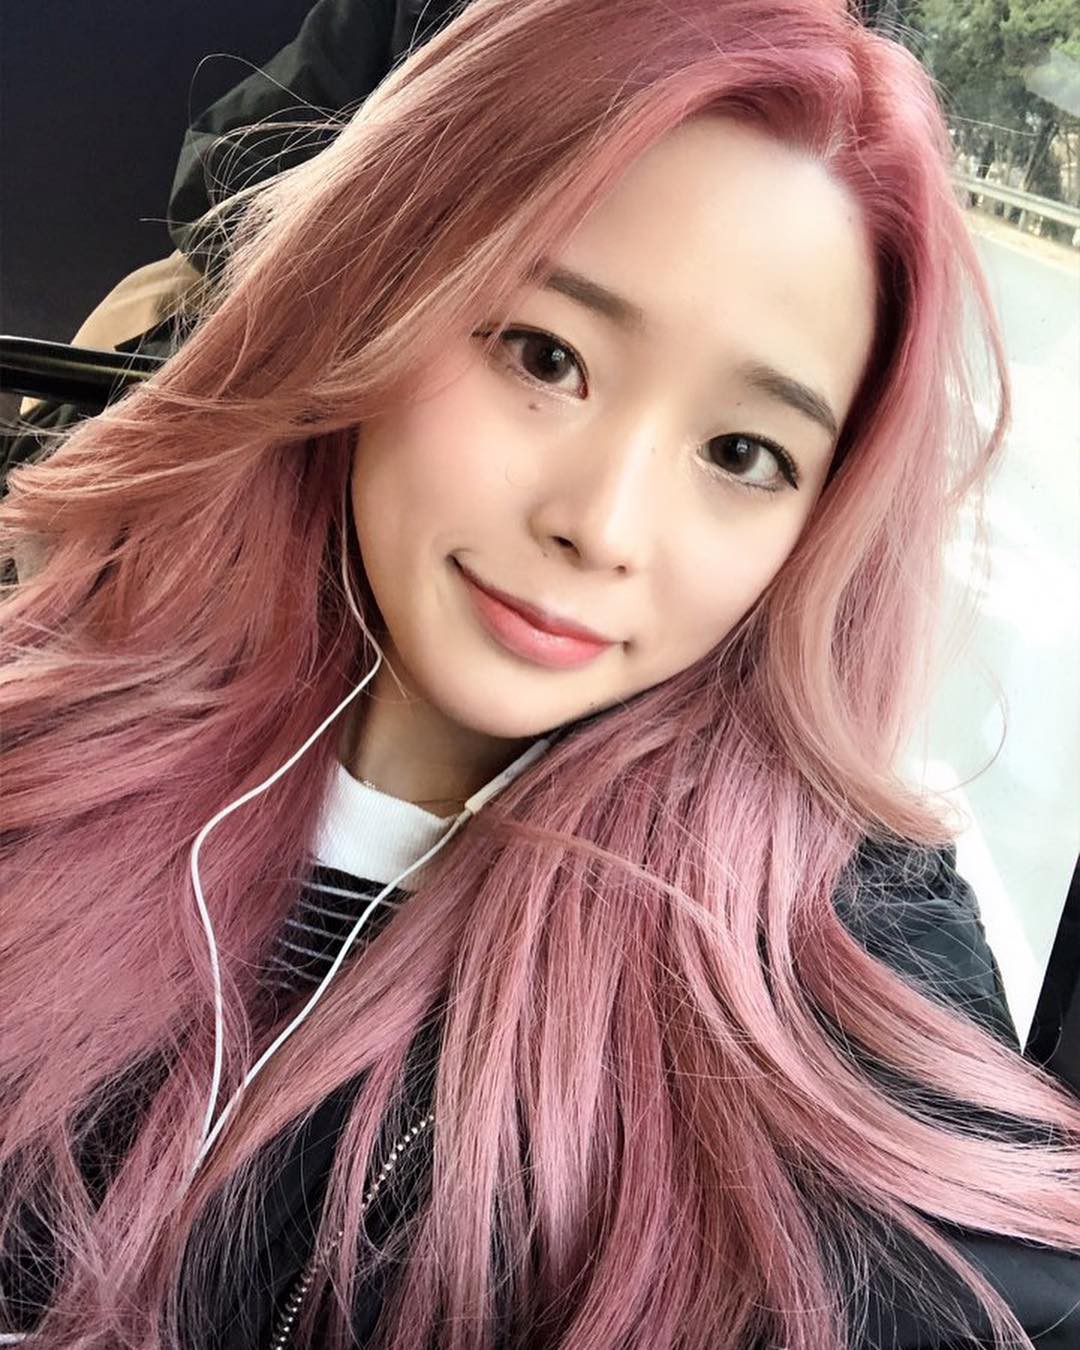 Màu nhuộm hot tại Hàn luôn là điểm nhấn trong thế giới nhuộm tóc toàn cầu. Hãy khám phá và thử nghiệm những sắc màu nổi bật, độc đáo và phong cách tại Hàn Quốc. Bạn sẽ được trải nghiệm cảm giác thú vị, khám phá những phong cách mới lạ và nâng cao vẻ đẹp của mái tóc của bạn.